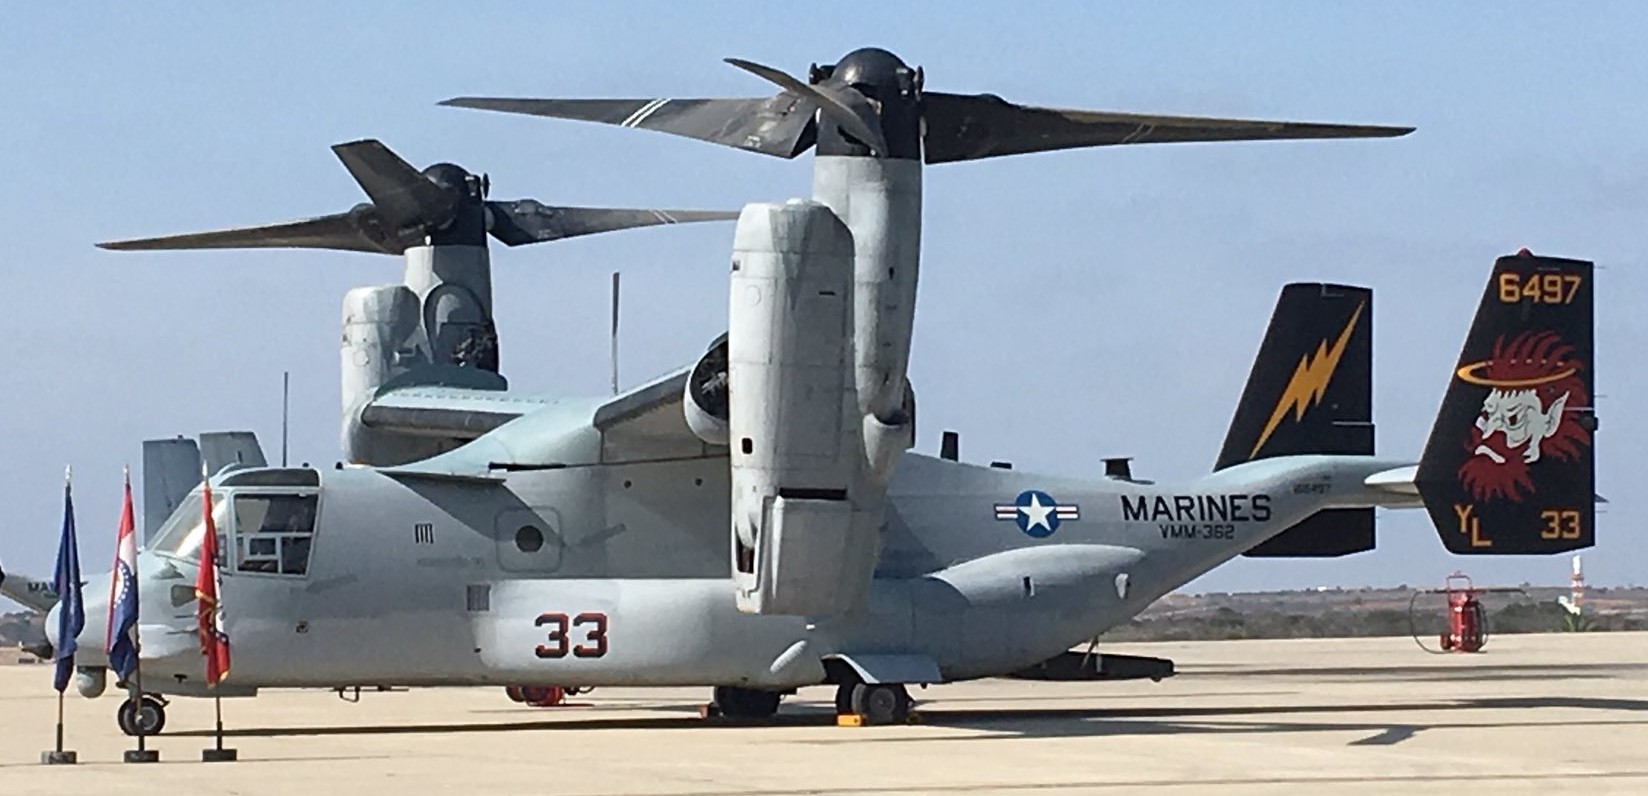 vmm-362 ugly angels marine medium tiltrotor squadron mv-22b osprey 35 mcas miramar california activation 2018